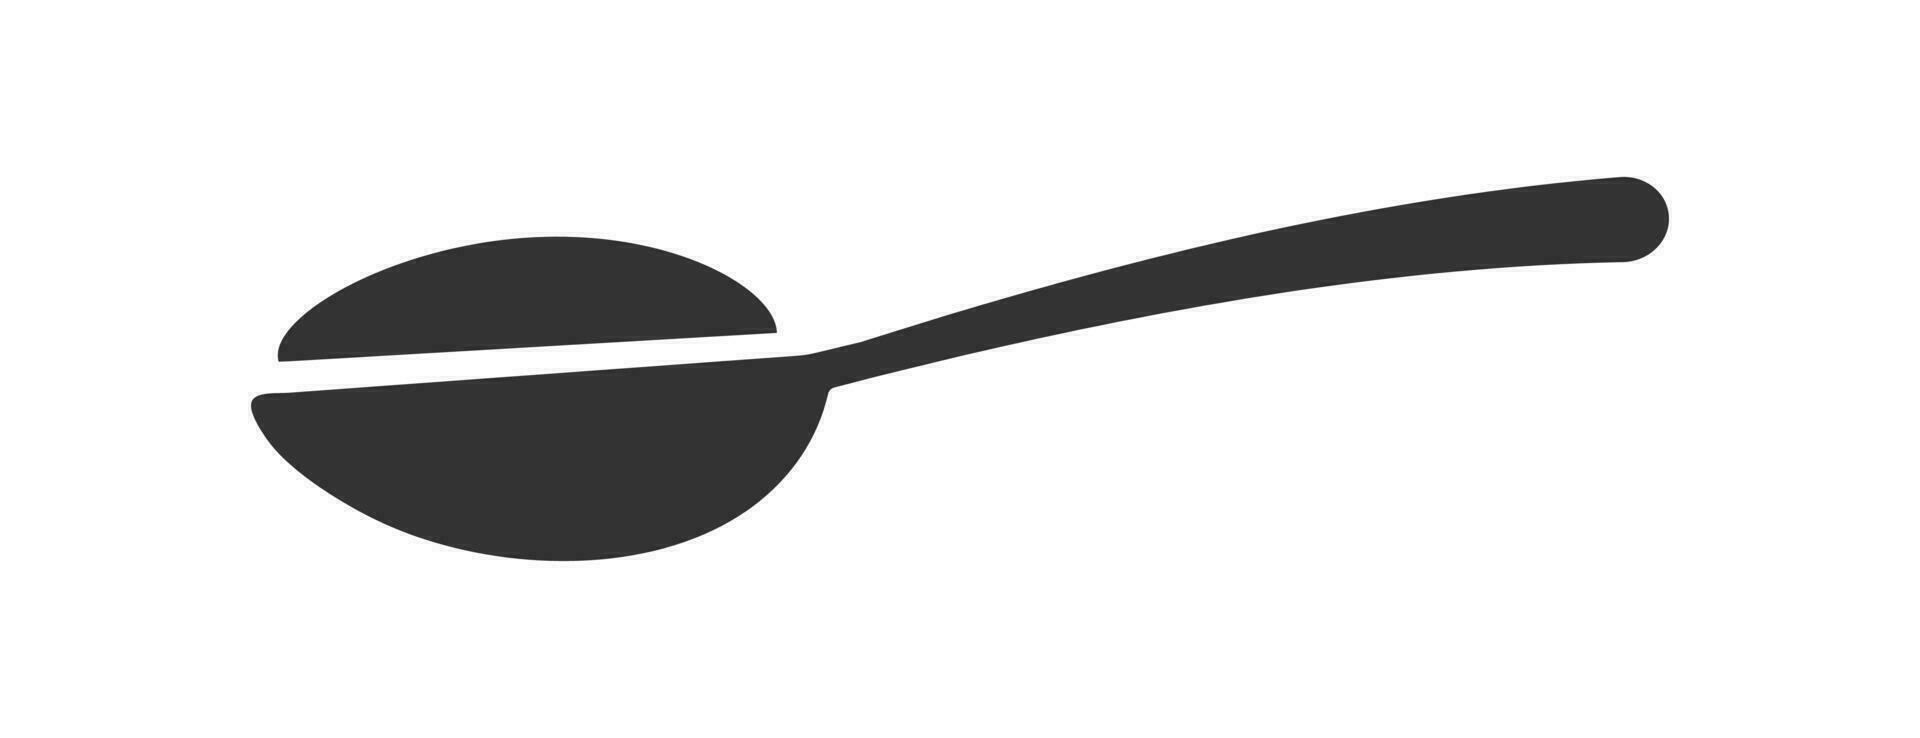 Spoon with sugar icon. Teaspoon symbol. Sign salt vector. vector